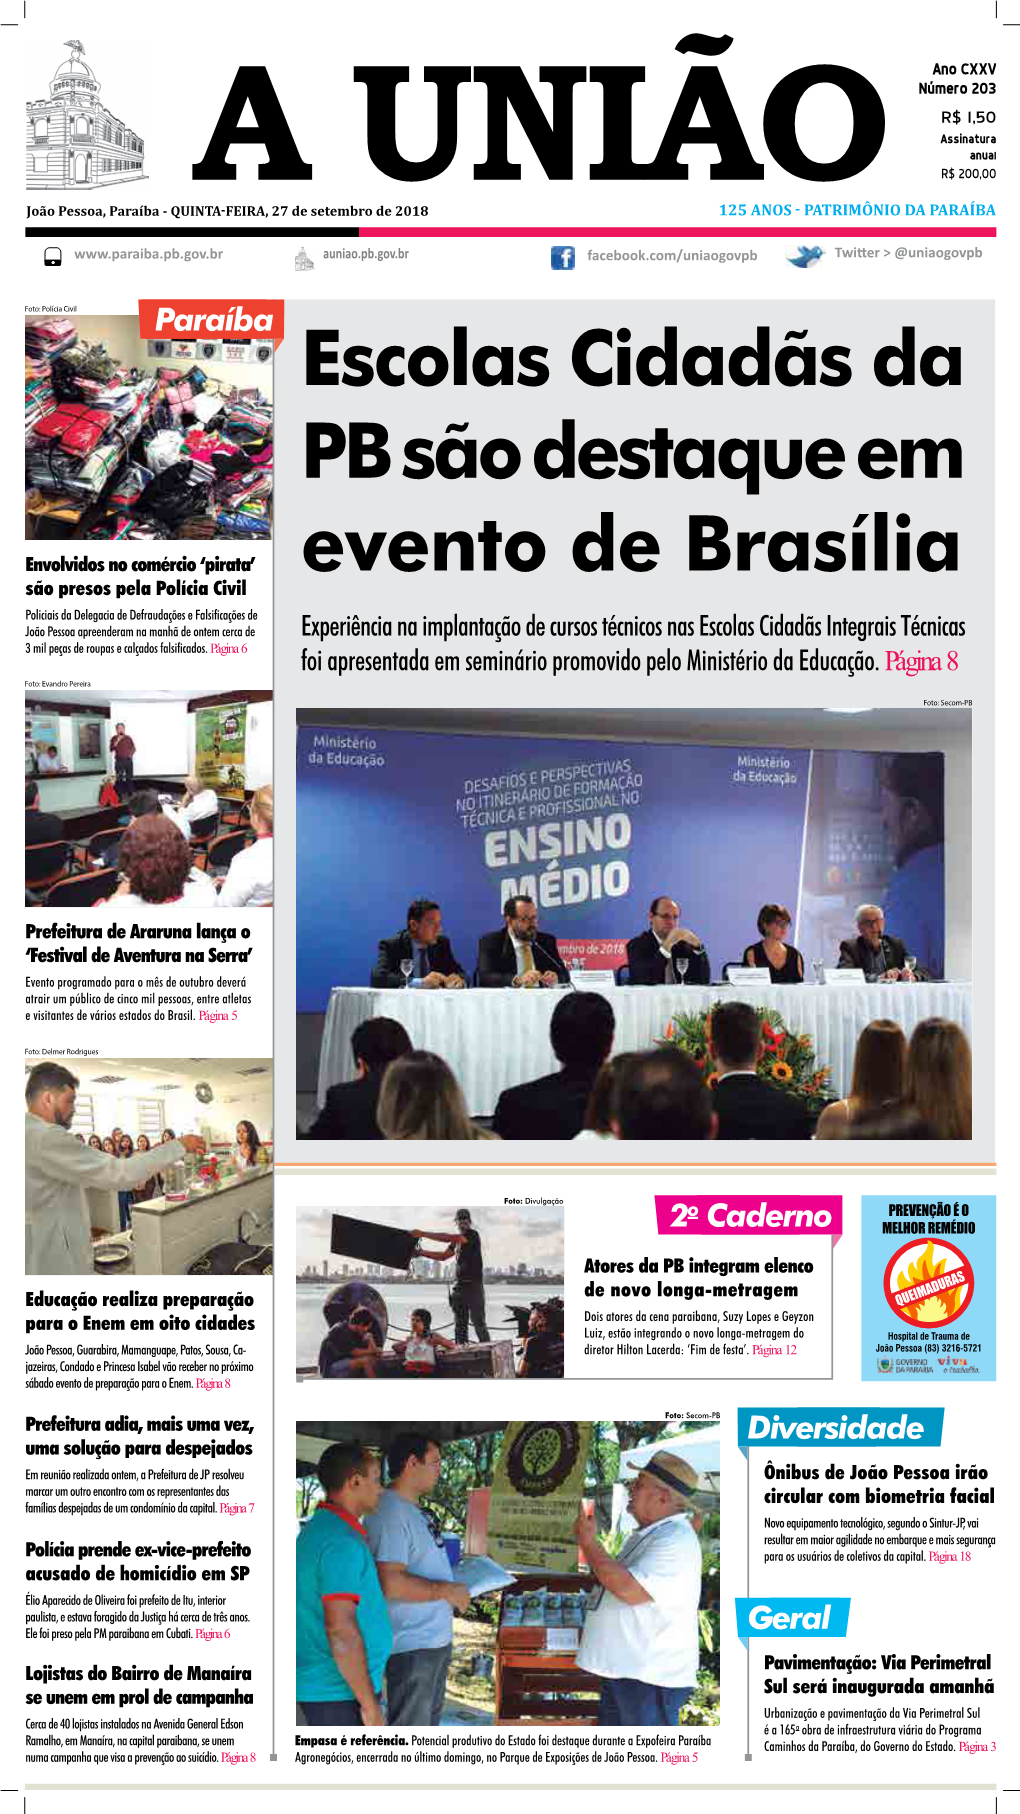 Escolas Cidadãs Da PB São Destaque Em Evento De Brasília